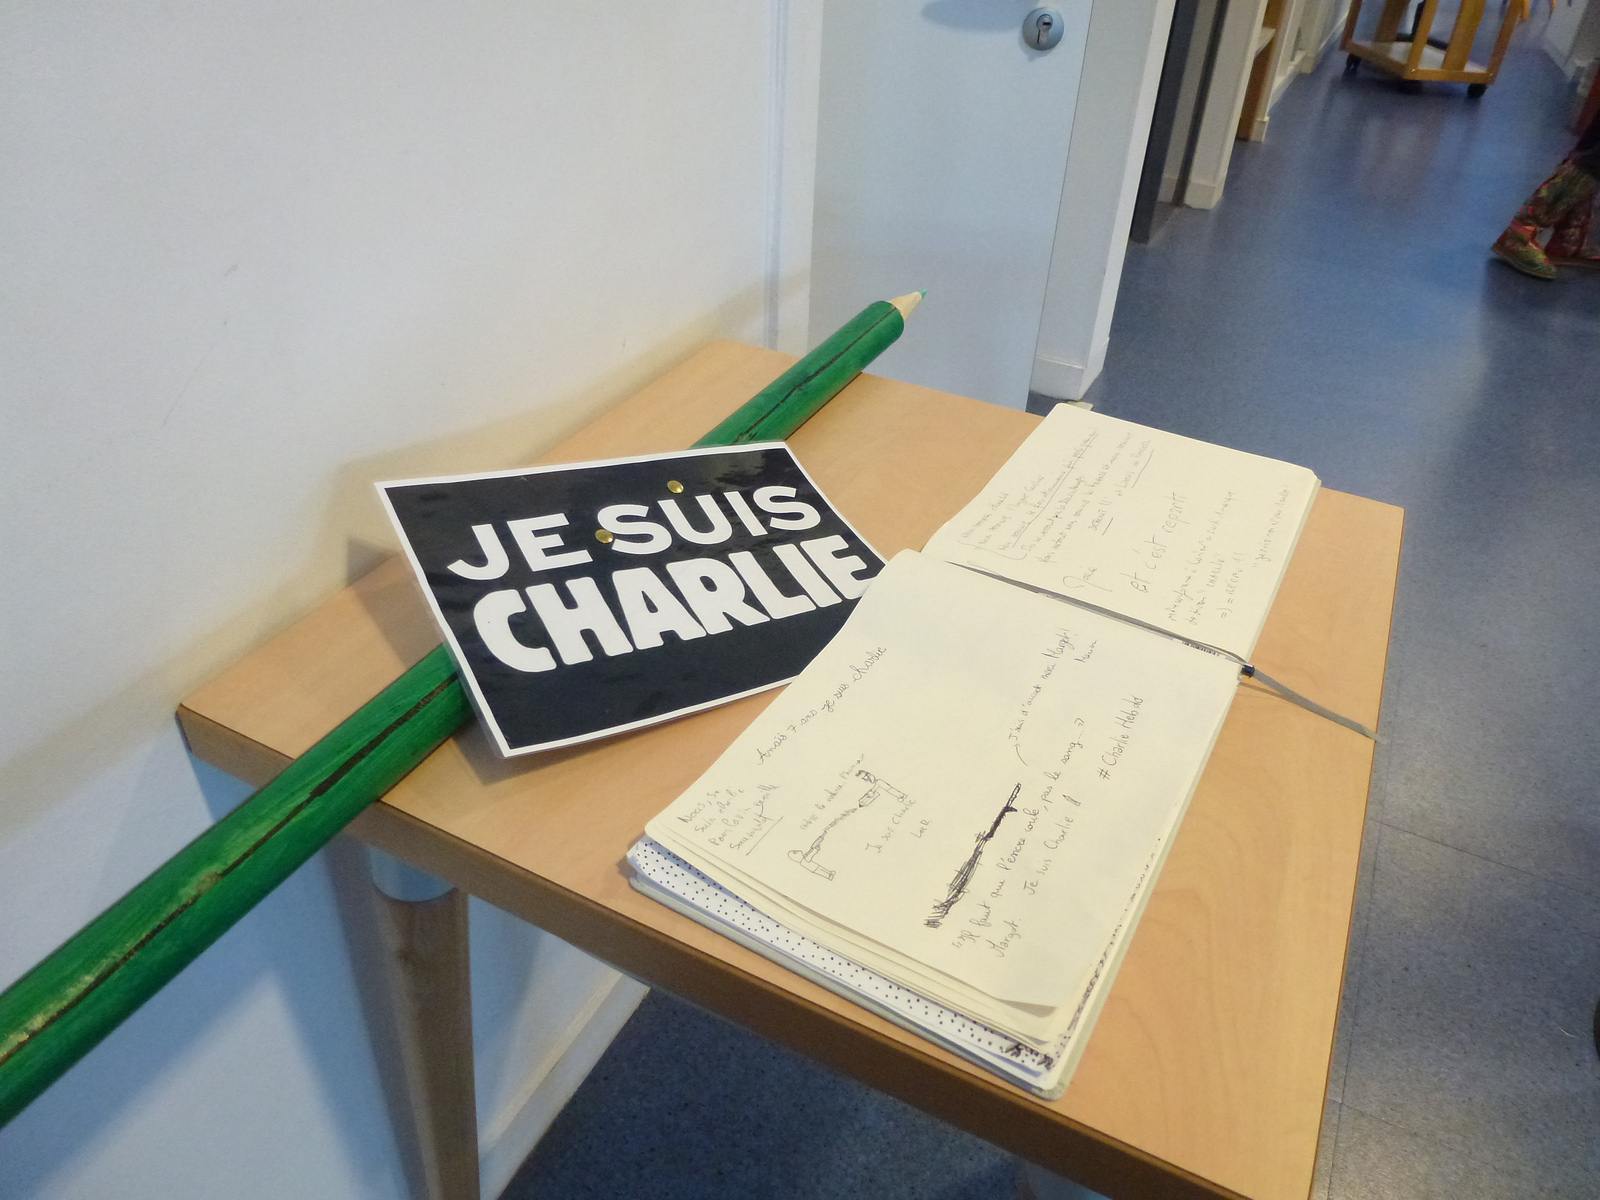 charlie hebdo exhibit2 Exhibition Charlie Hebdo at Quimperle